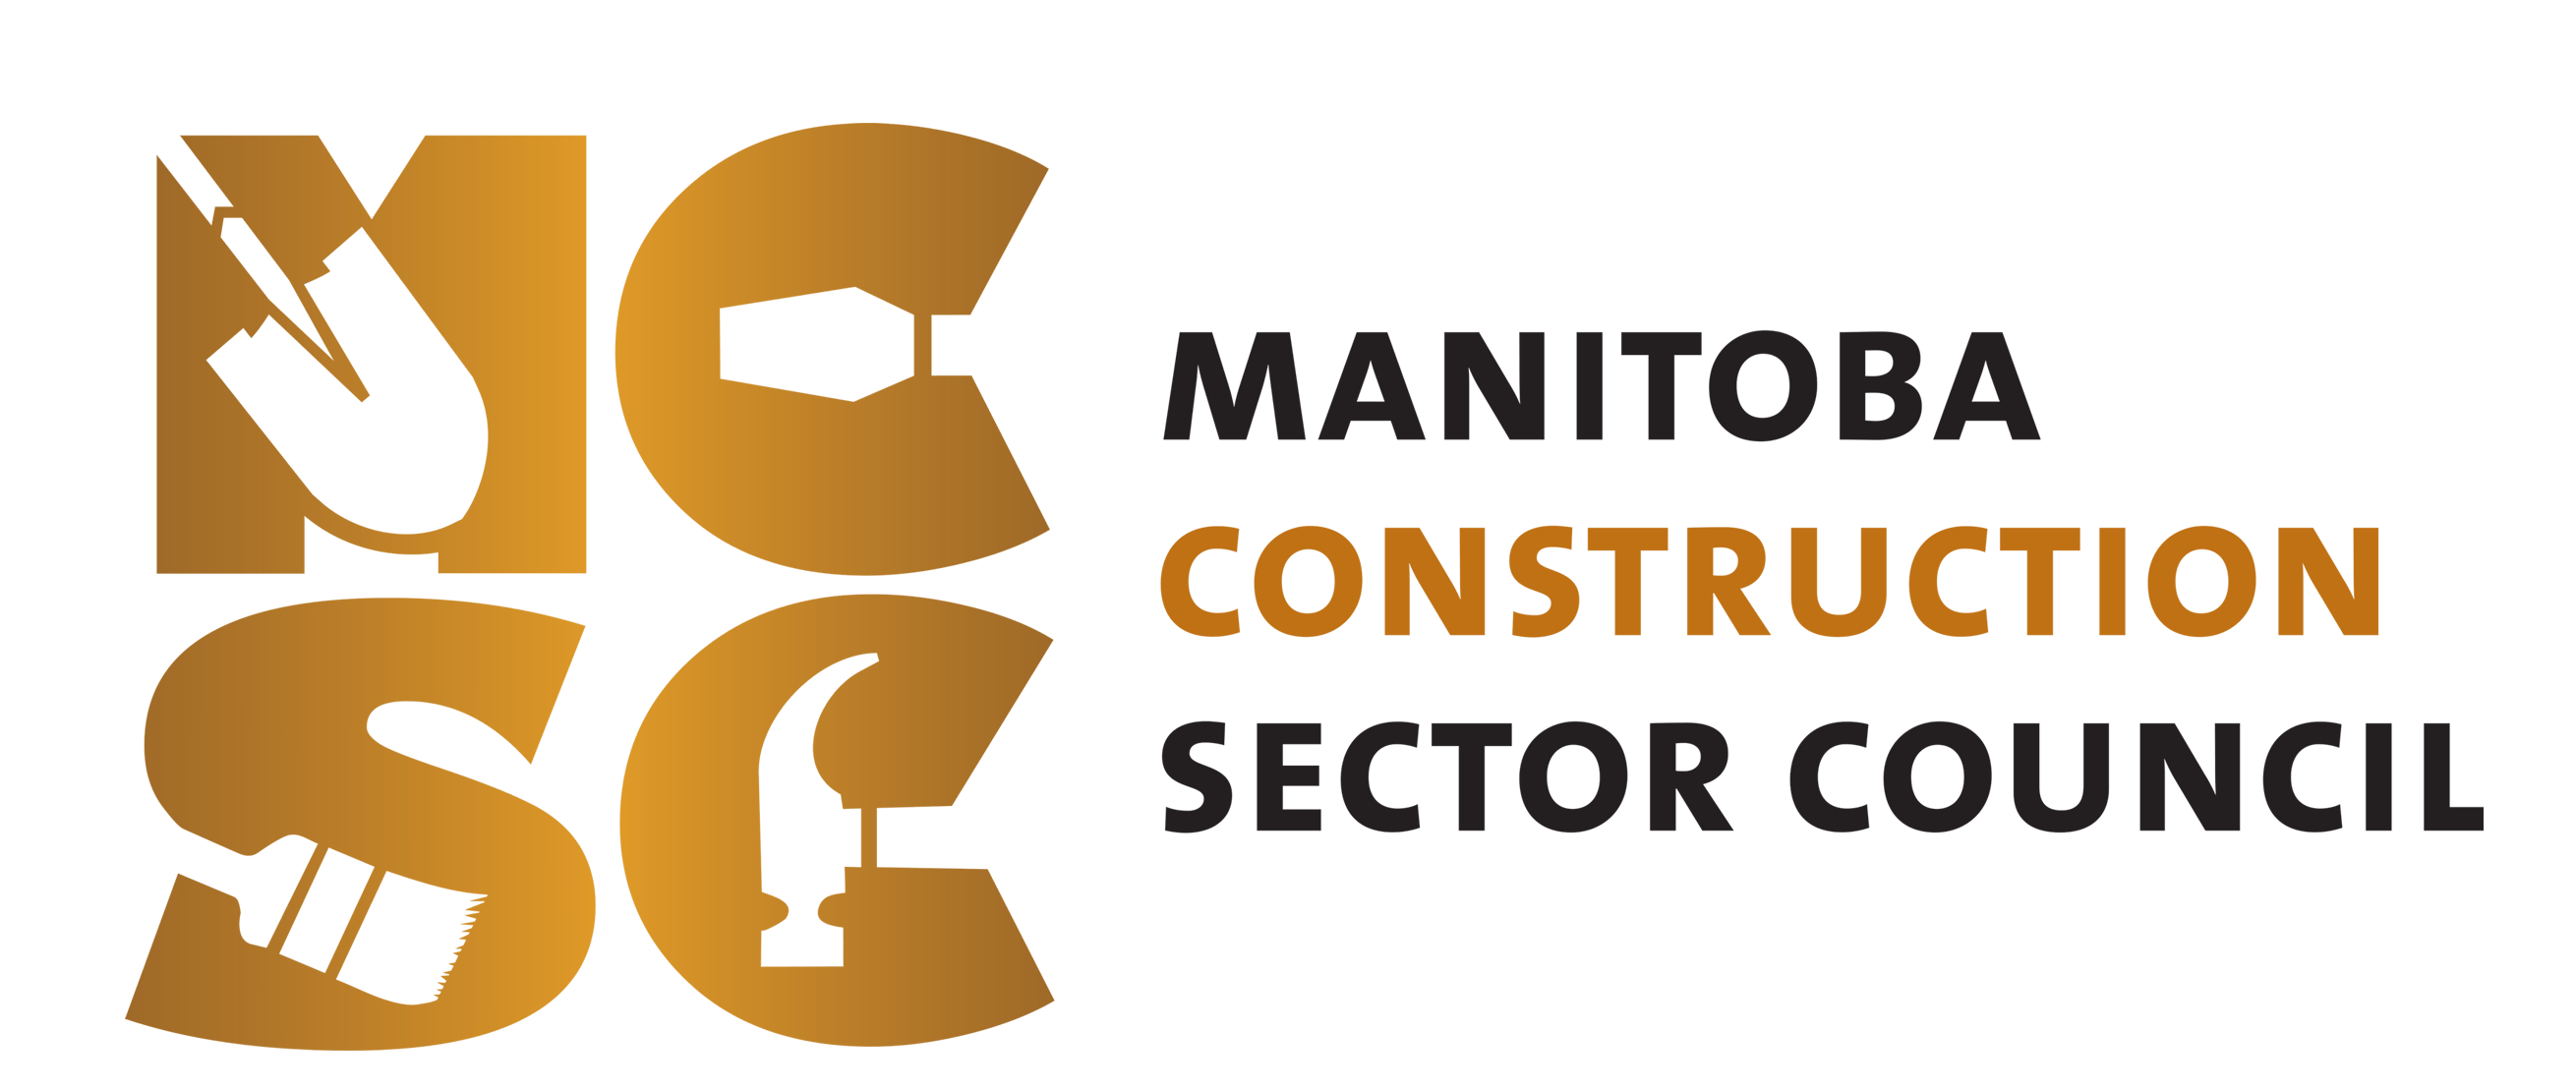 Mantioba Construction Sector Council (MCSC) logo